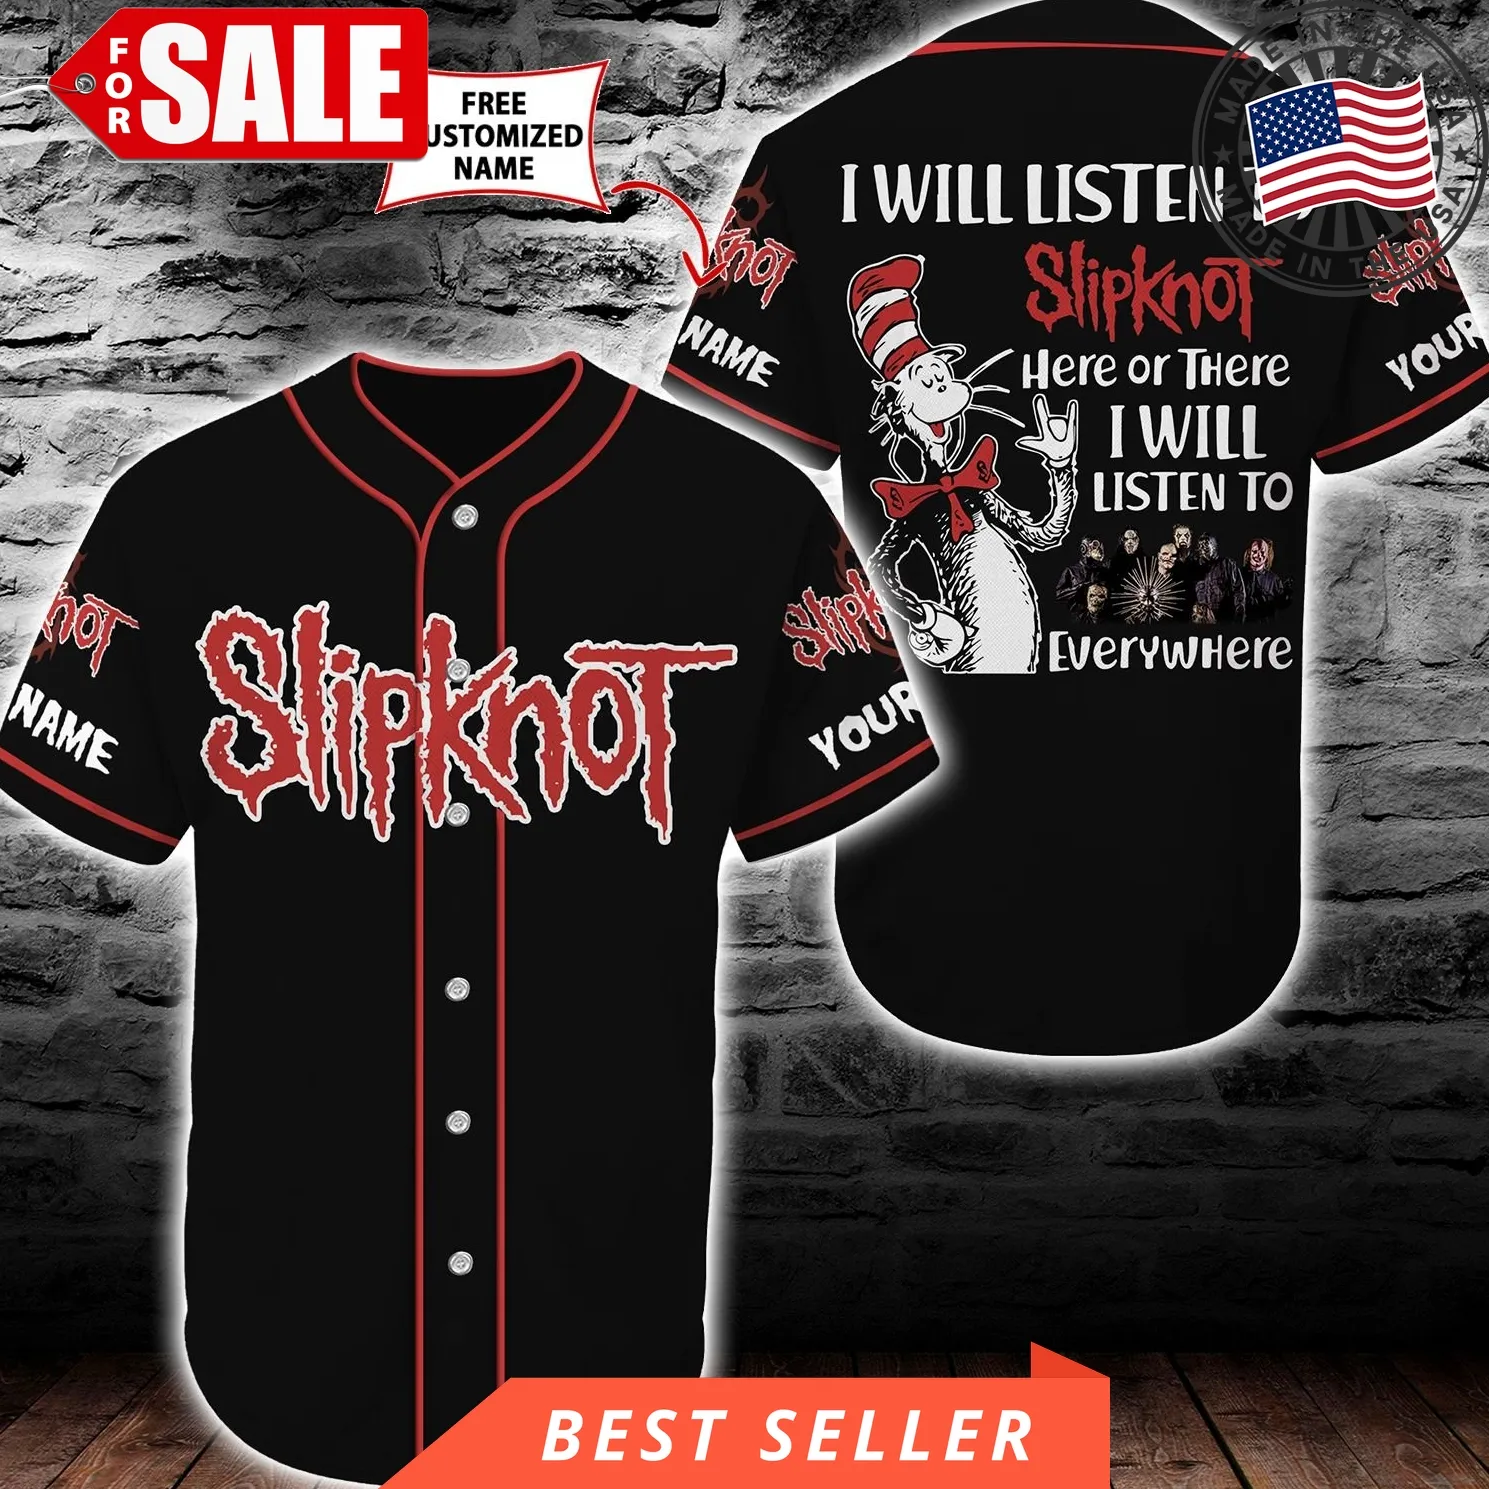 Dr Seuss Slipknot Baseball Tee Jersey Shirt Black (Personalized Custom Name) Unisex Men Women